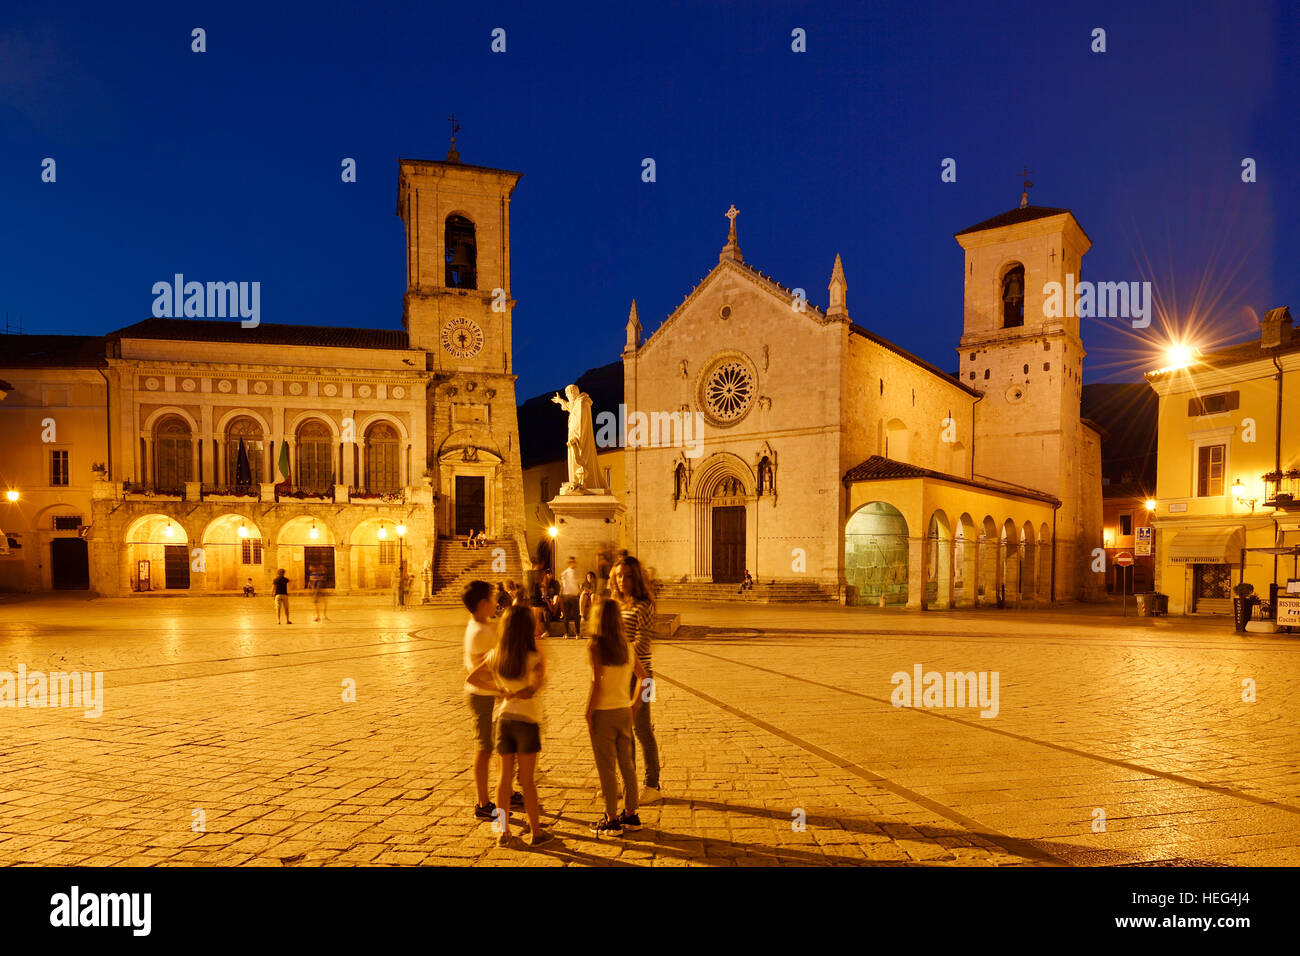 Palazzo Comunale and Basilica di San Benedetto, evening, Norica, Perugia, Umbria, Italy Stock Photo